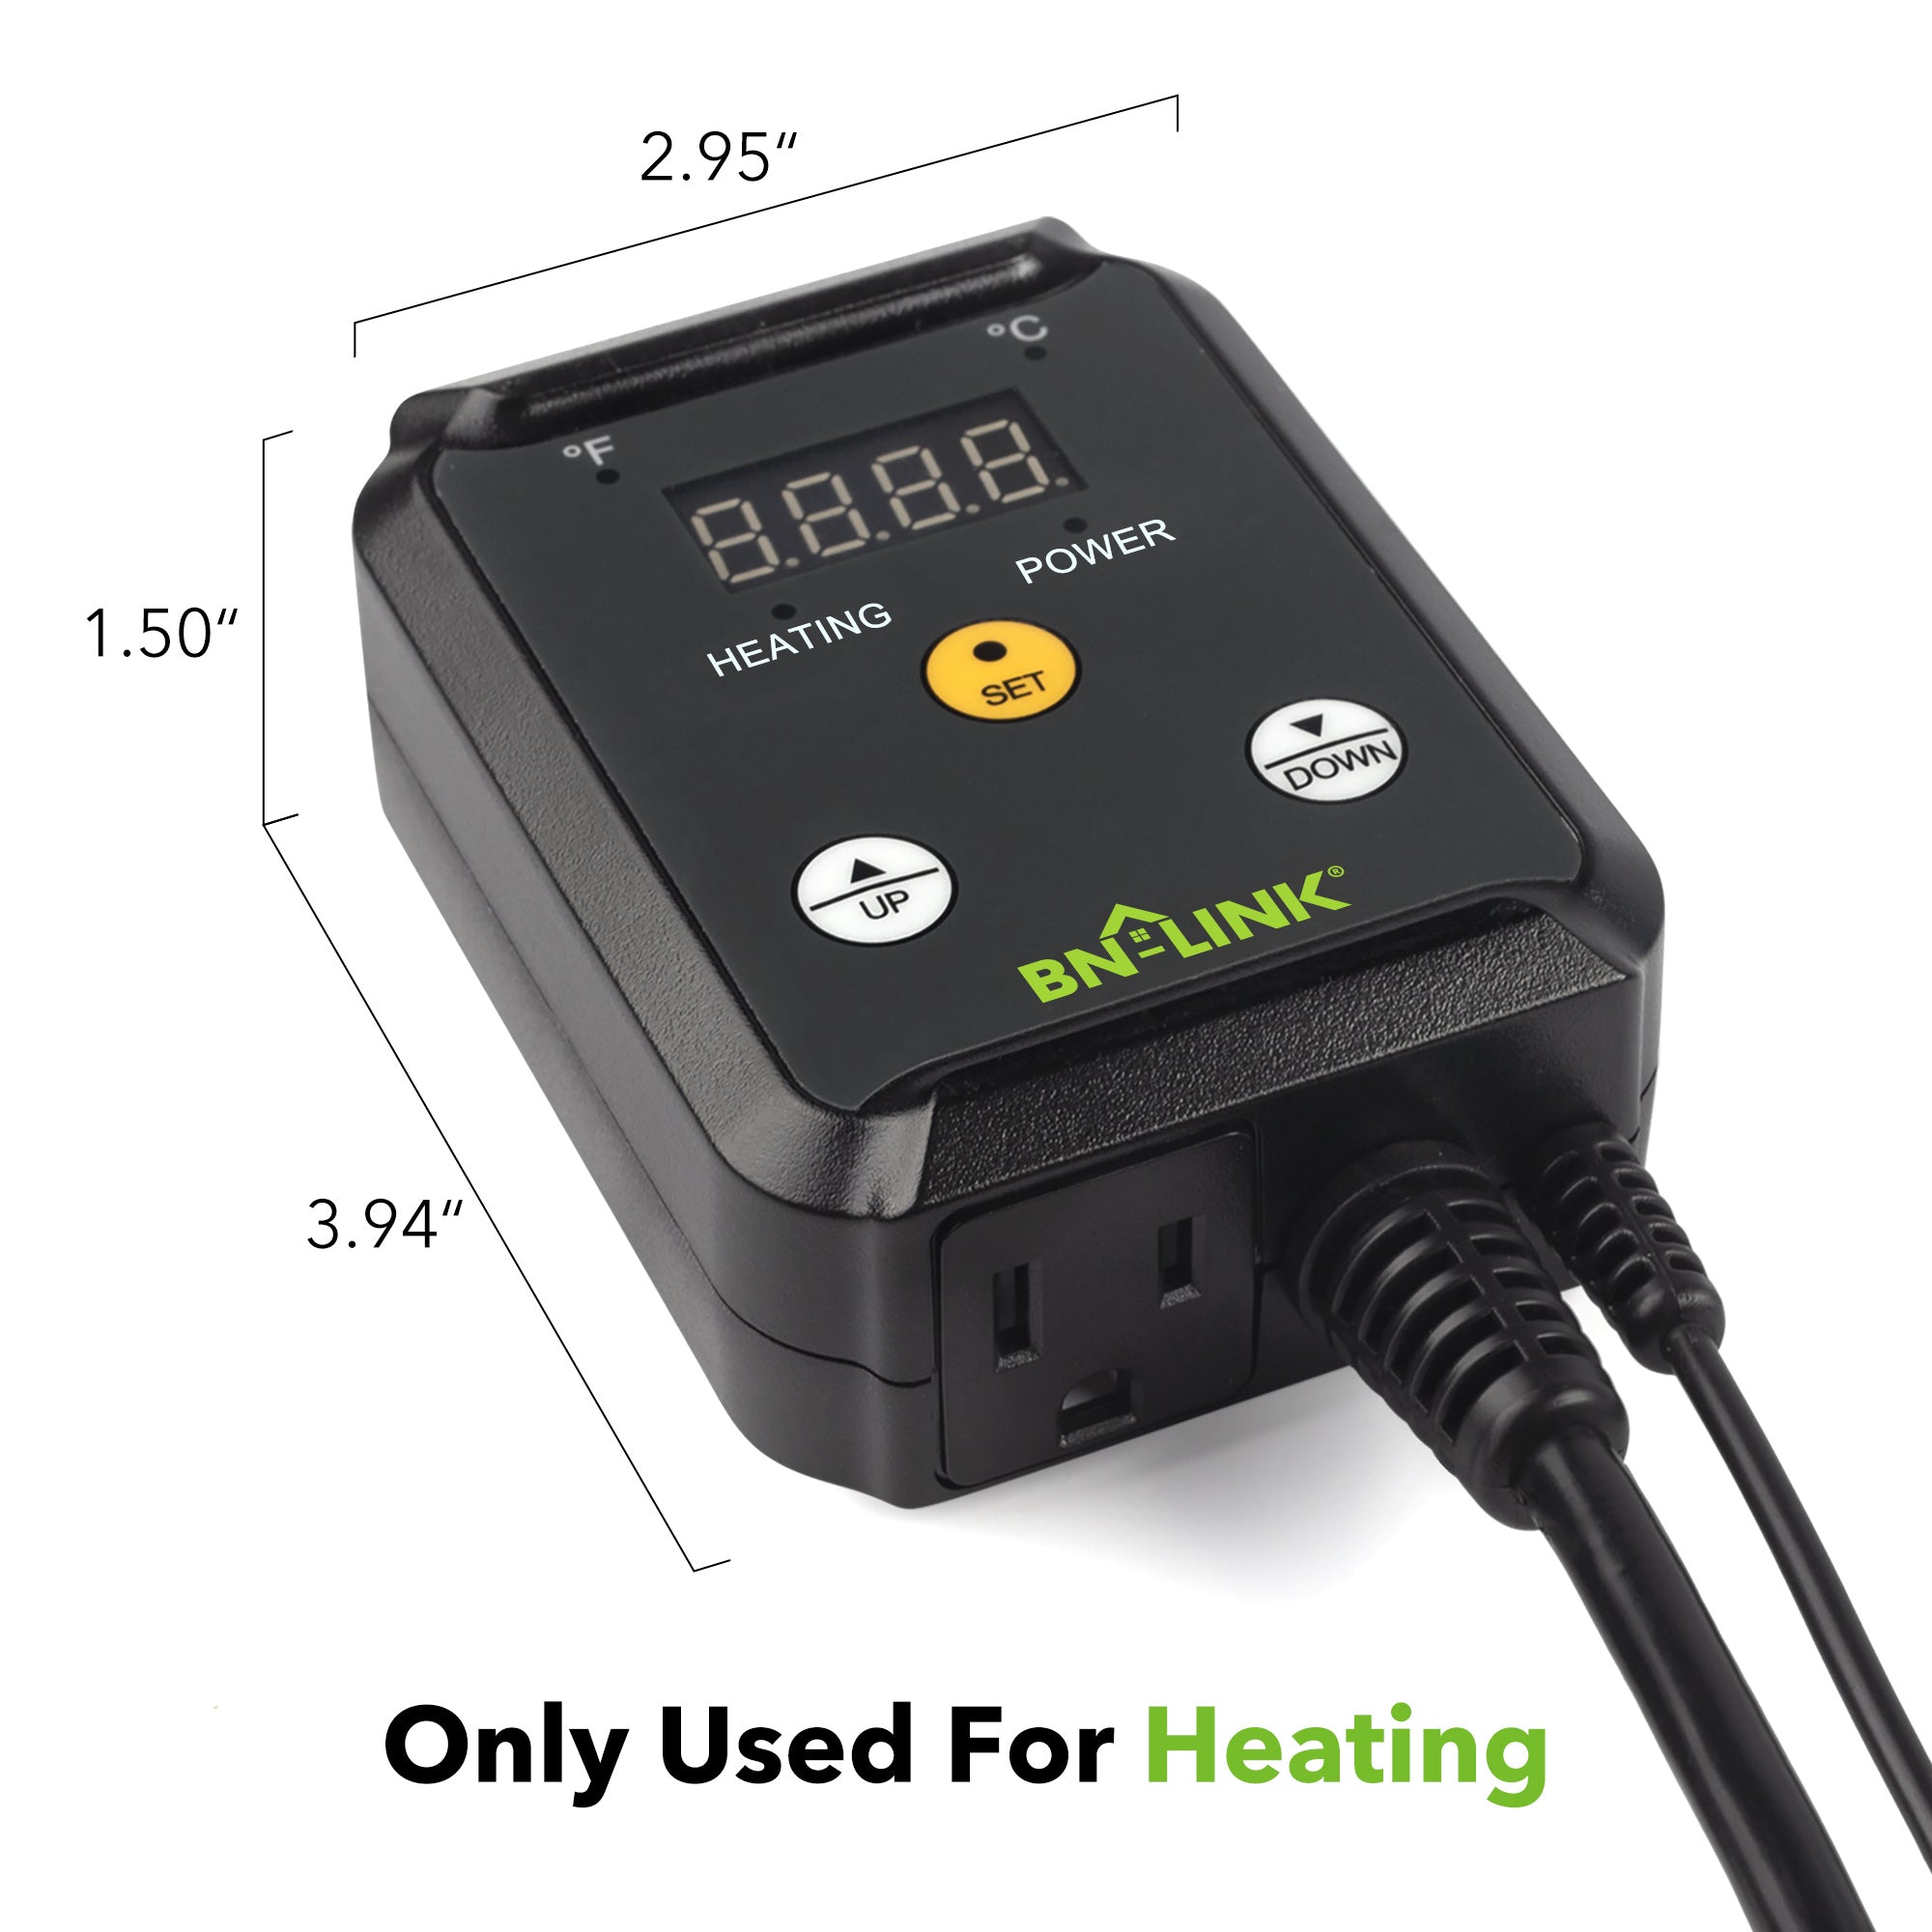 Digital Heat Mat Thermostat Controller 40-108°F BN-LINK - BN-LINK